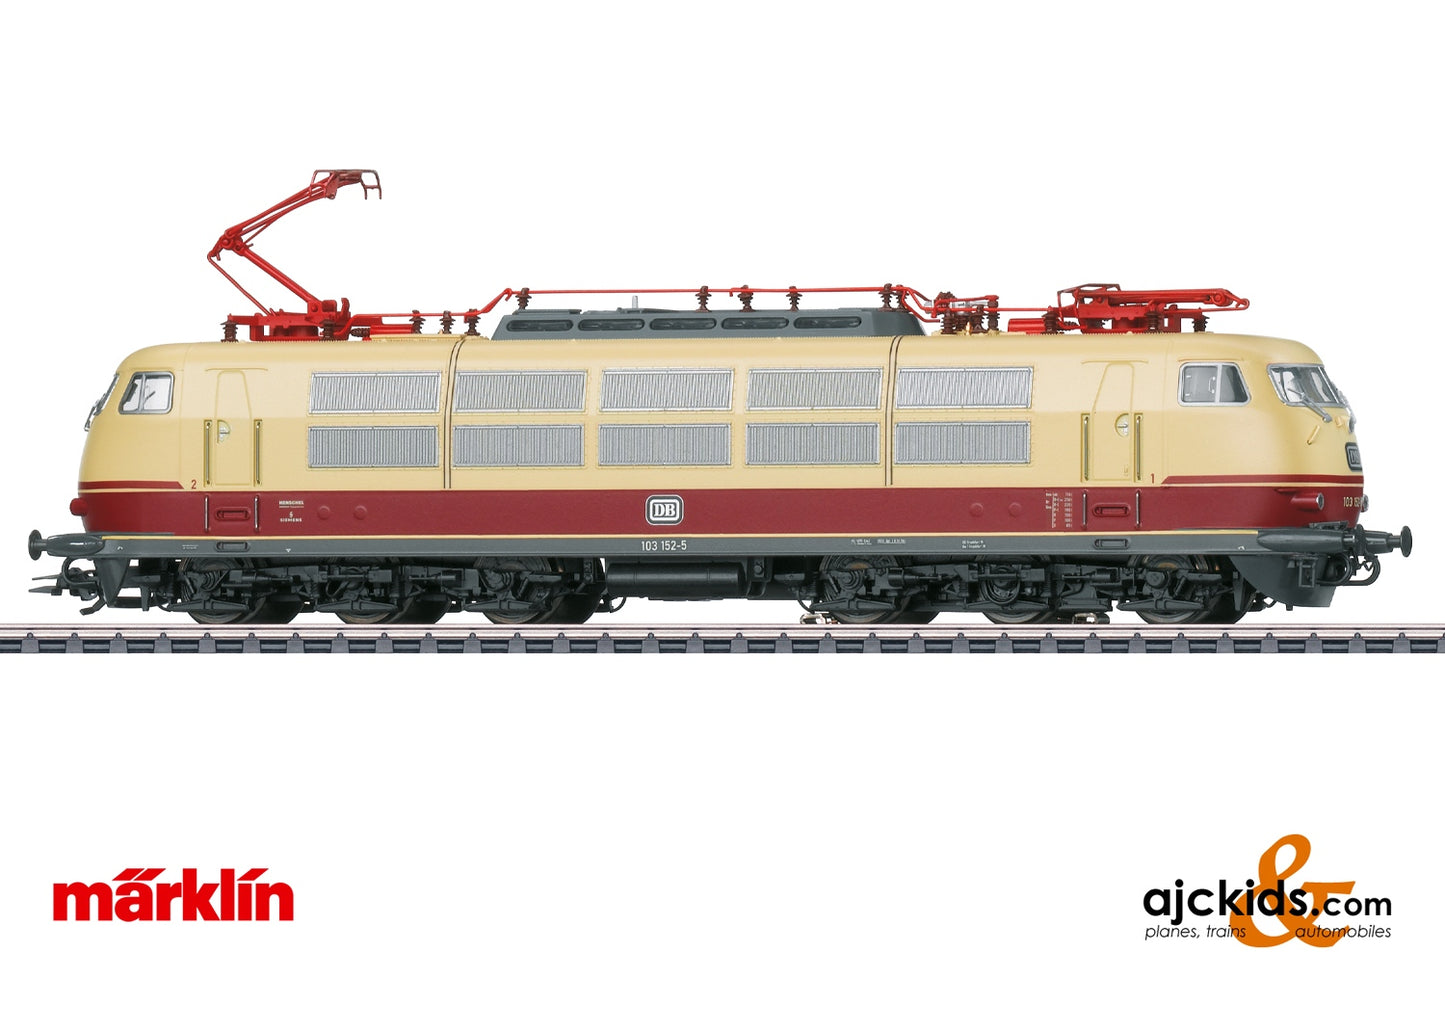 Marklin 39151 DB Class 103 Electric at Ajckids.com